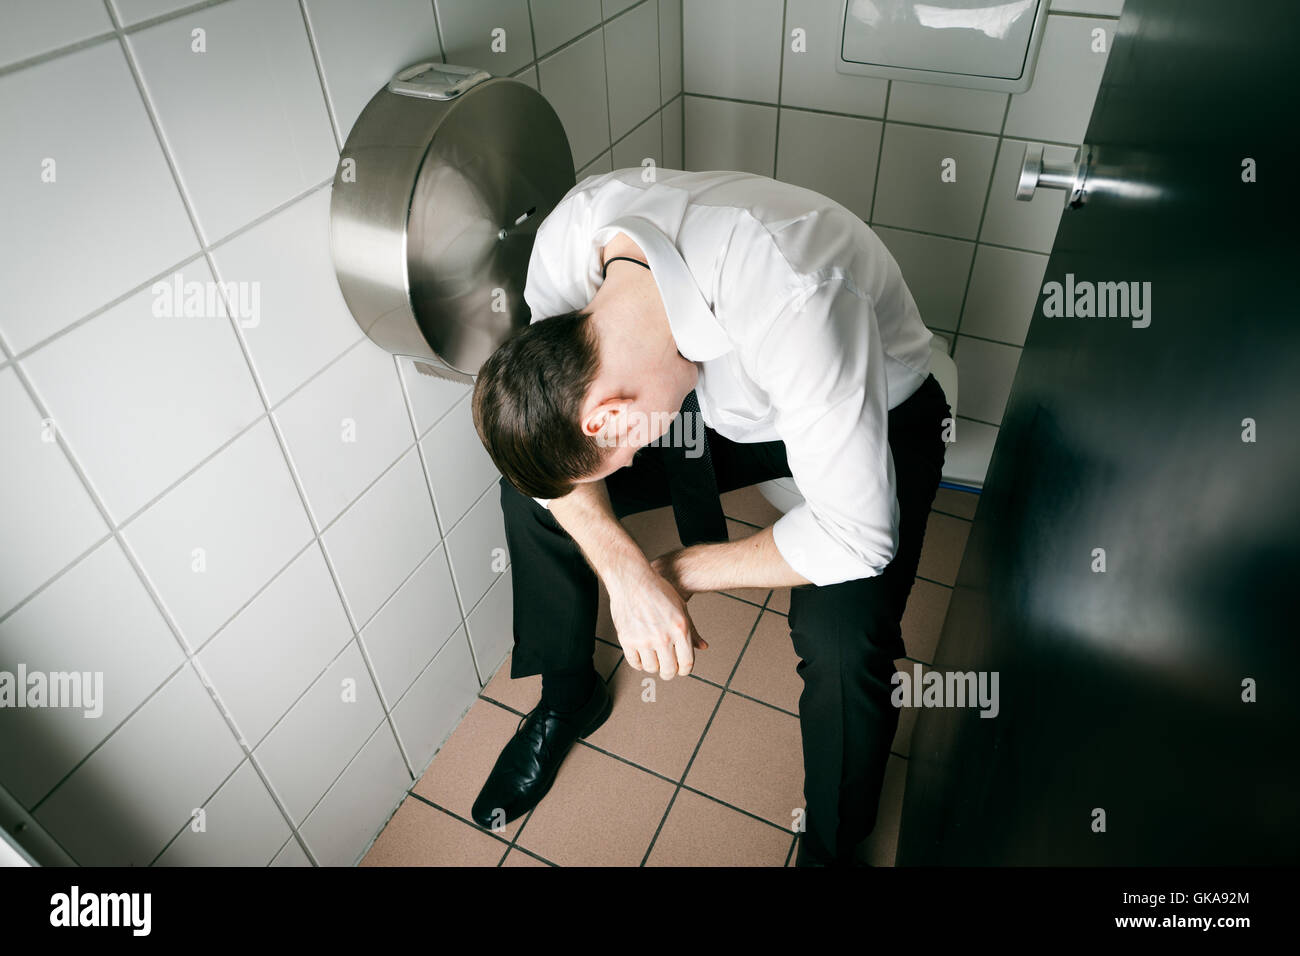 Leute Auf Der Toilette Stockfotos und -bilder Kaufen - Alamy